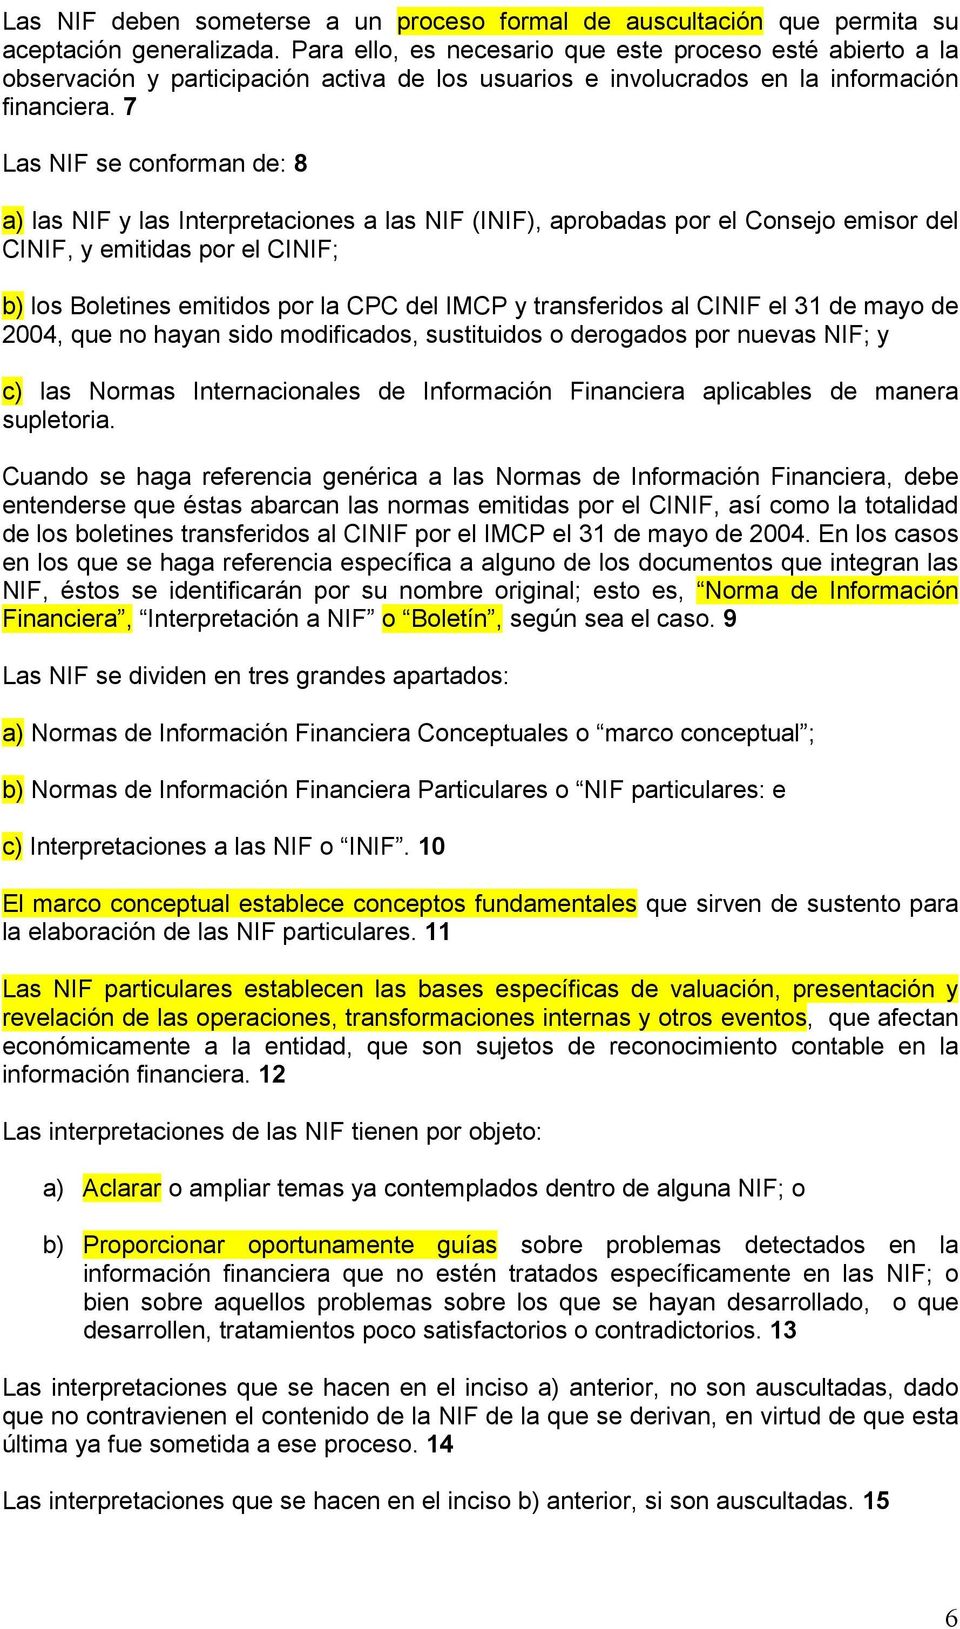 7 Las NIF se conforman de: 8 a) las NIF y las Interpretaciones a las NIF (INIF), aprobadas por el Consejo emisor del CINIF, y emitidas por el CINIF; b) los Boletines emitidos por la CPC del IMCP y